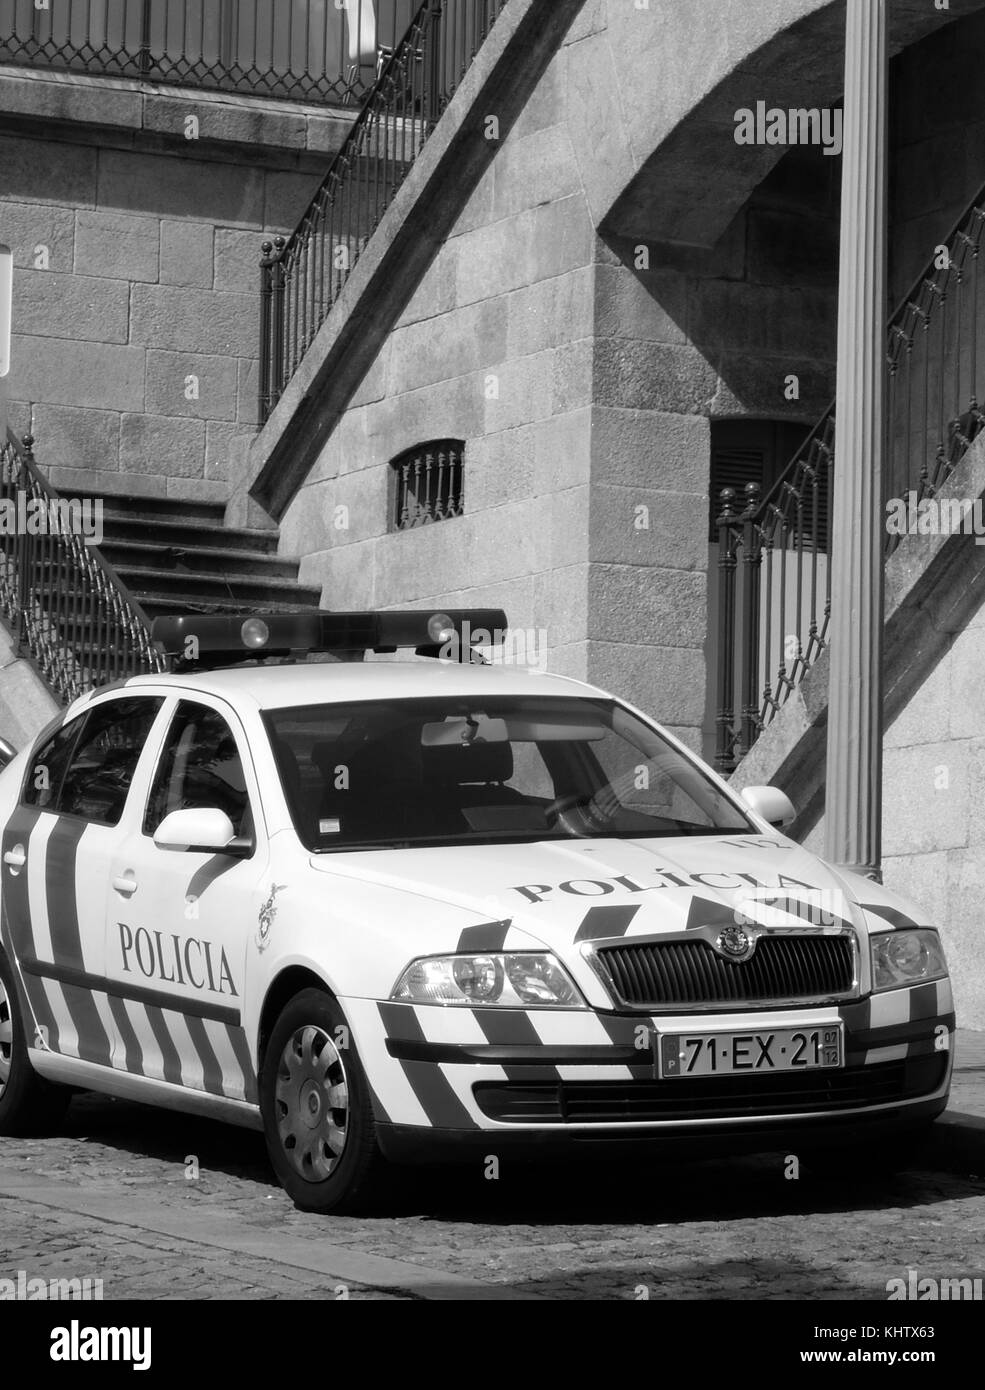 September 2017 -  Skoda Octavia Police car in the Portuguese City of Porto. Stock Photo